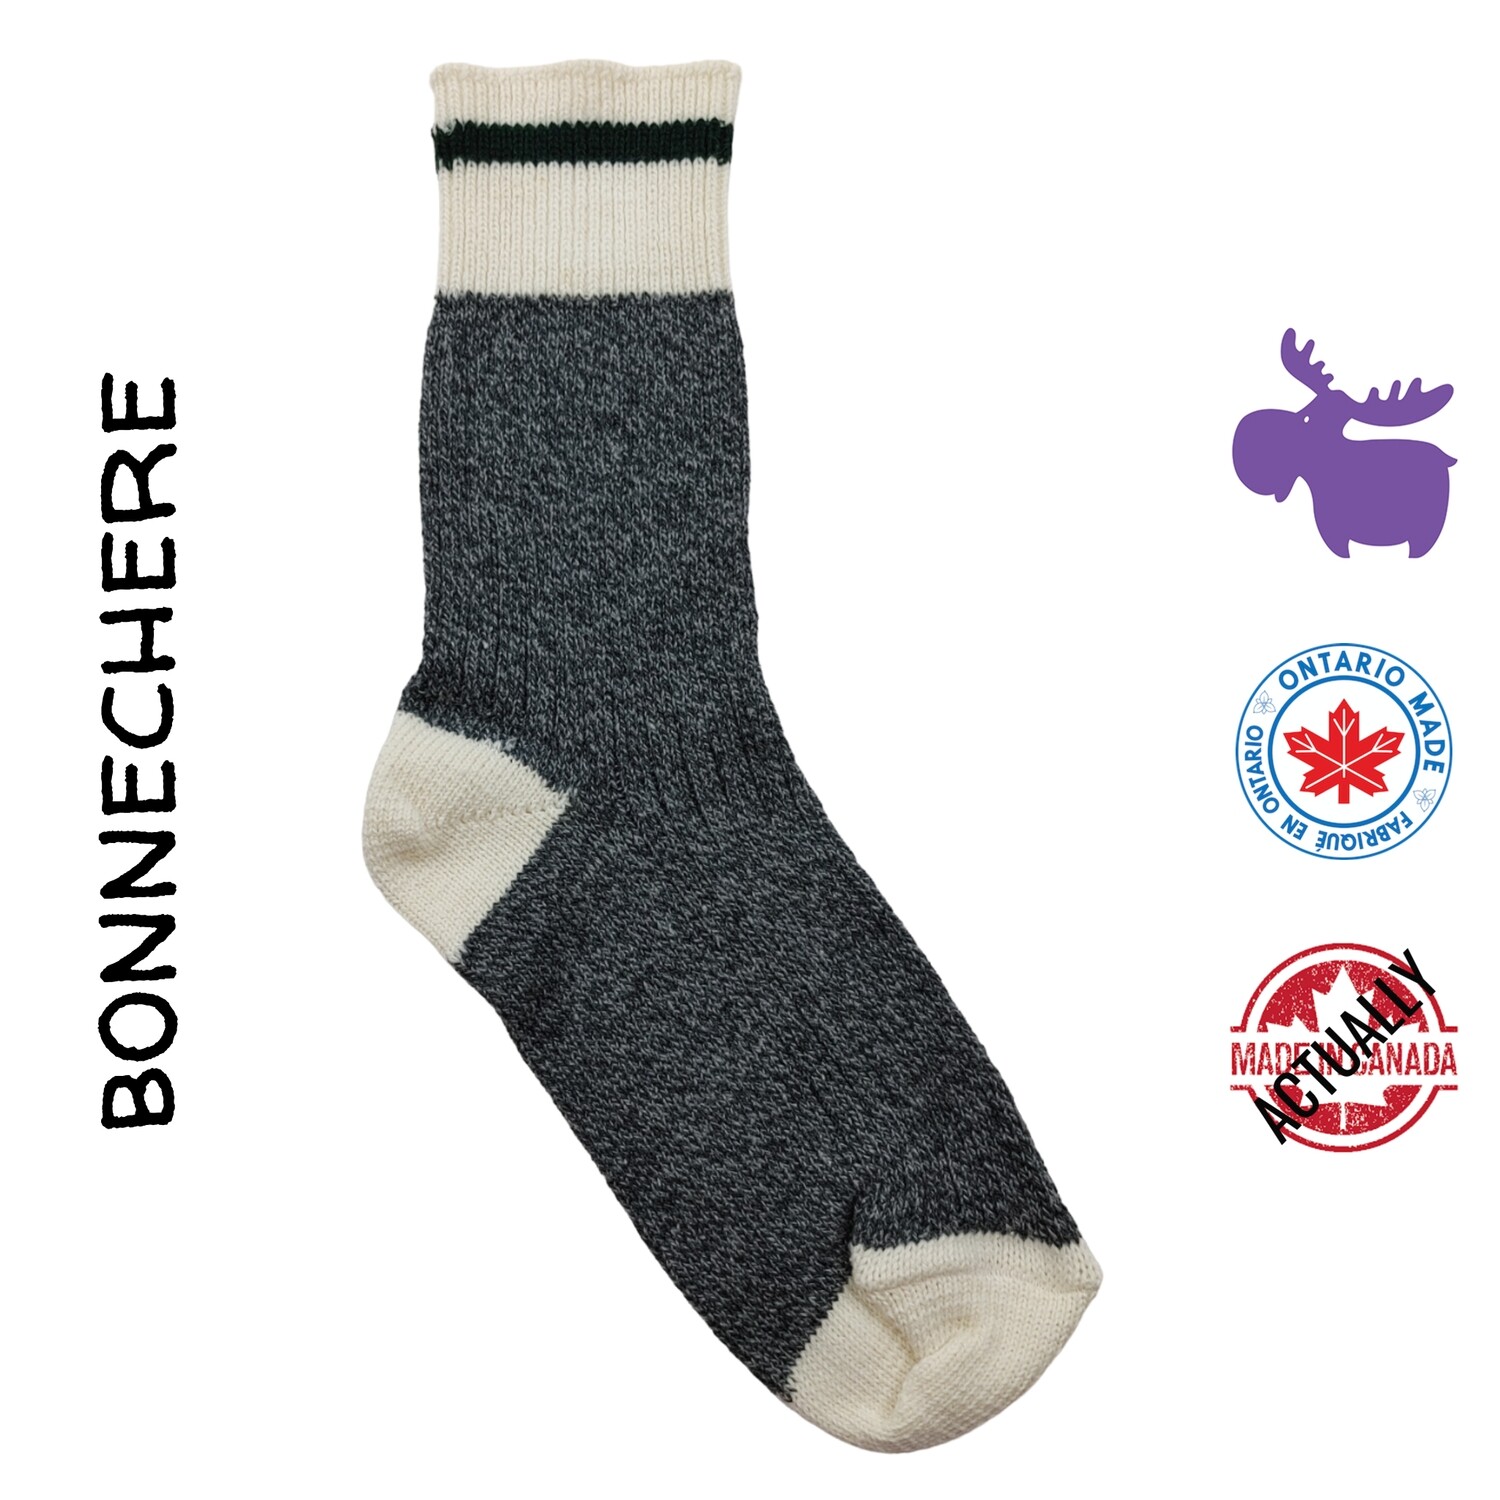 Purple Moose Sock Company | The Sockologist is IN